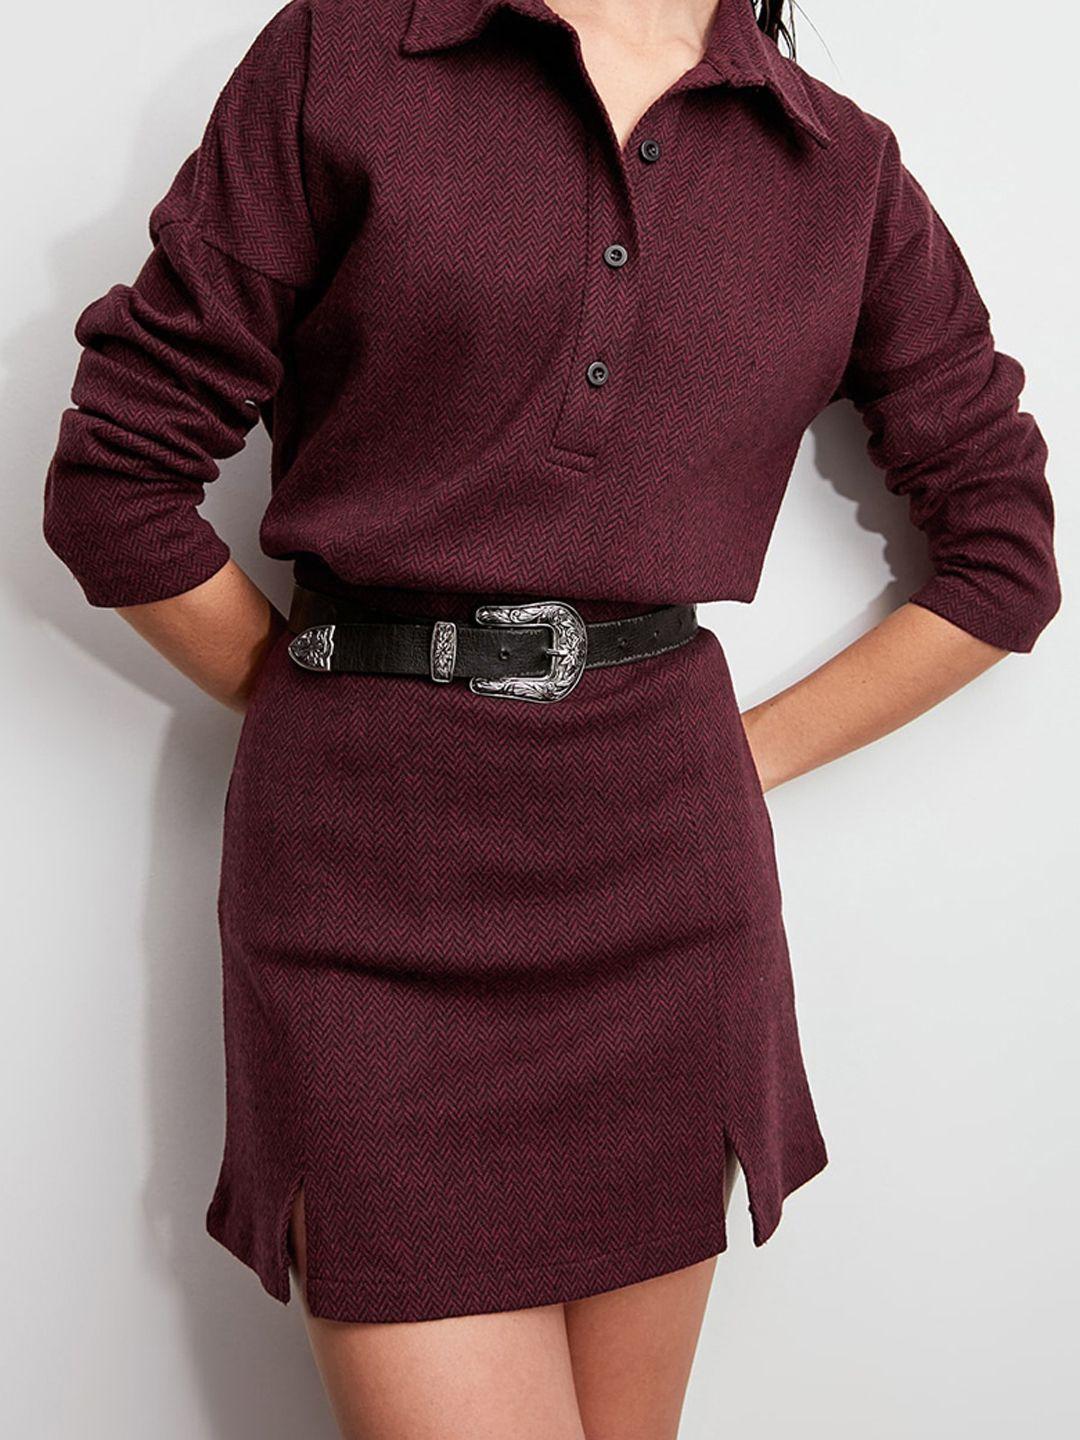 trendyol women burgundy chevron patterned pencil skirt